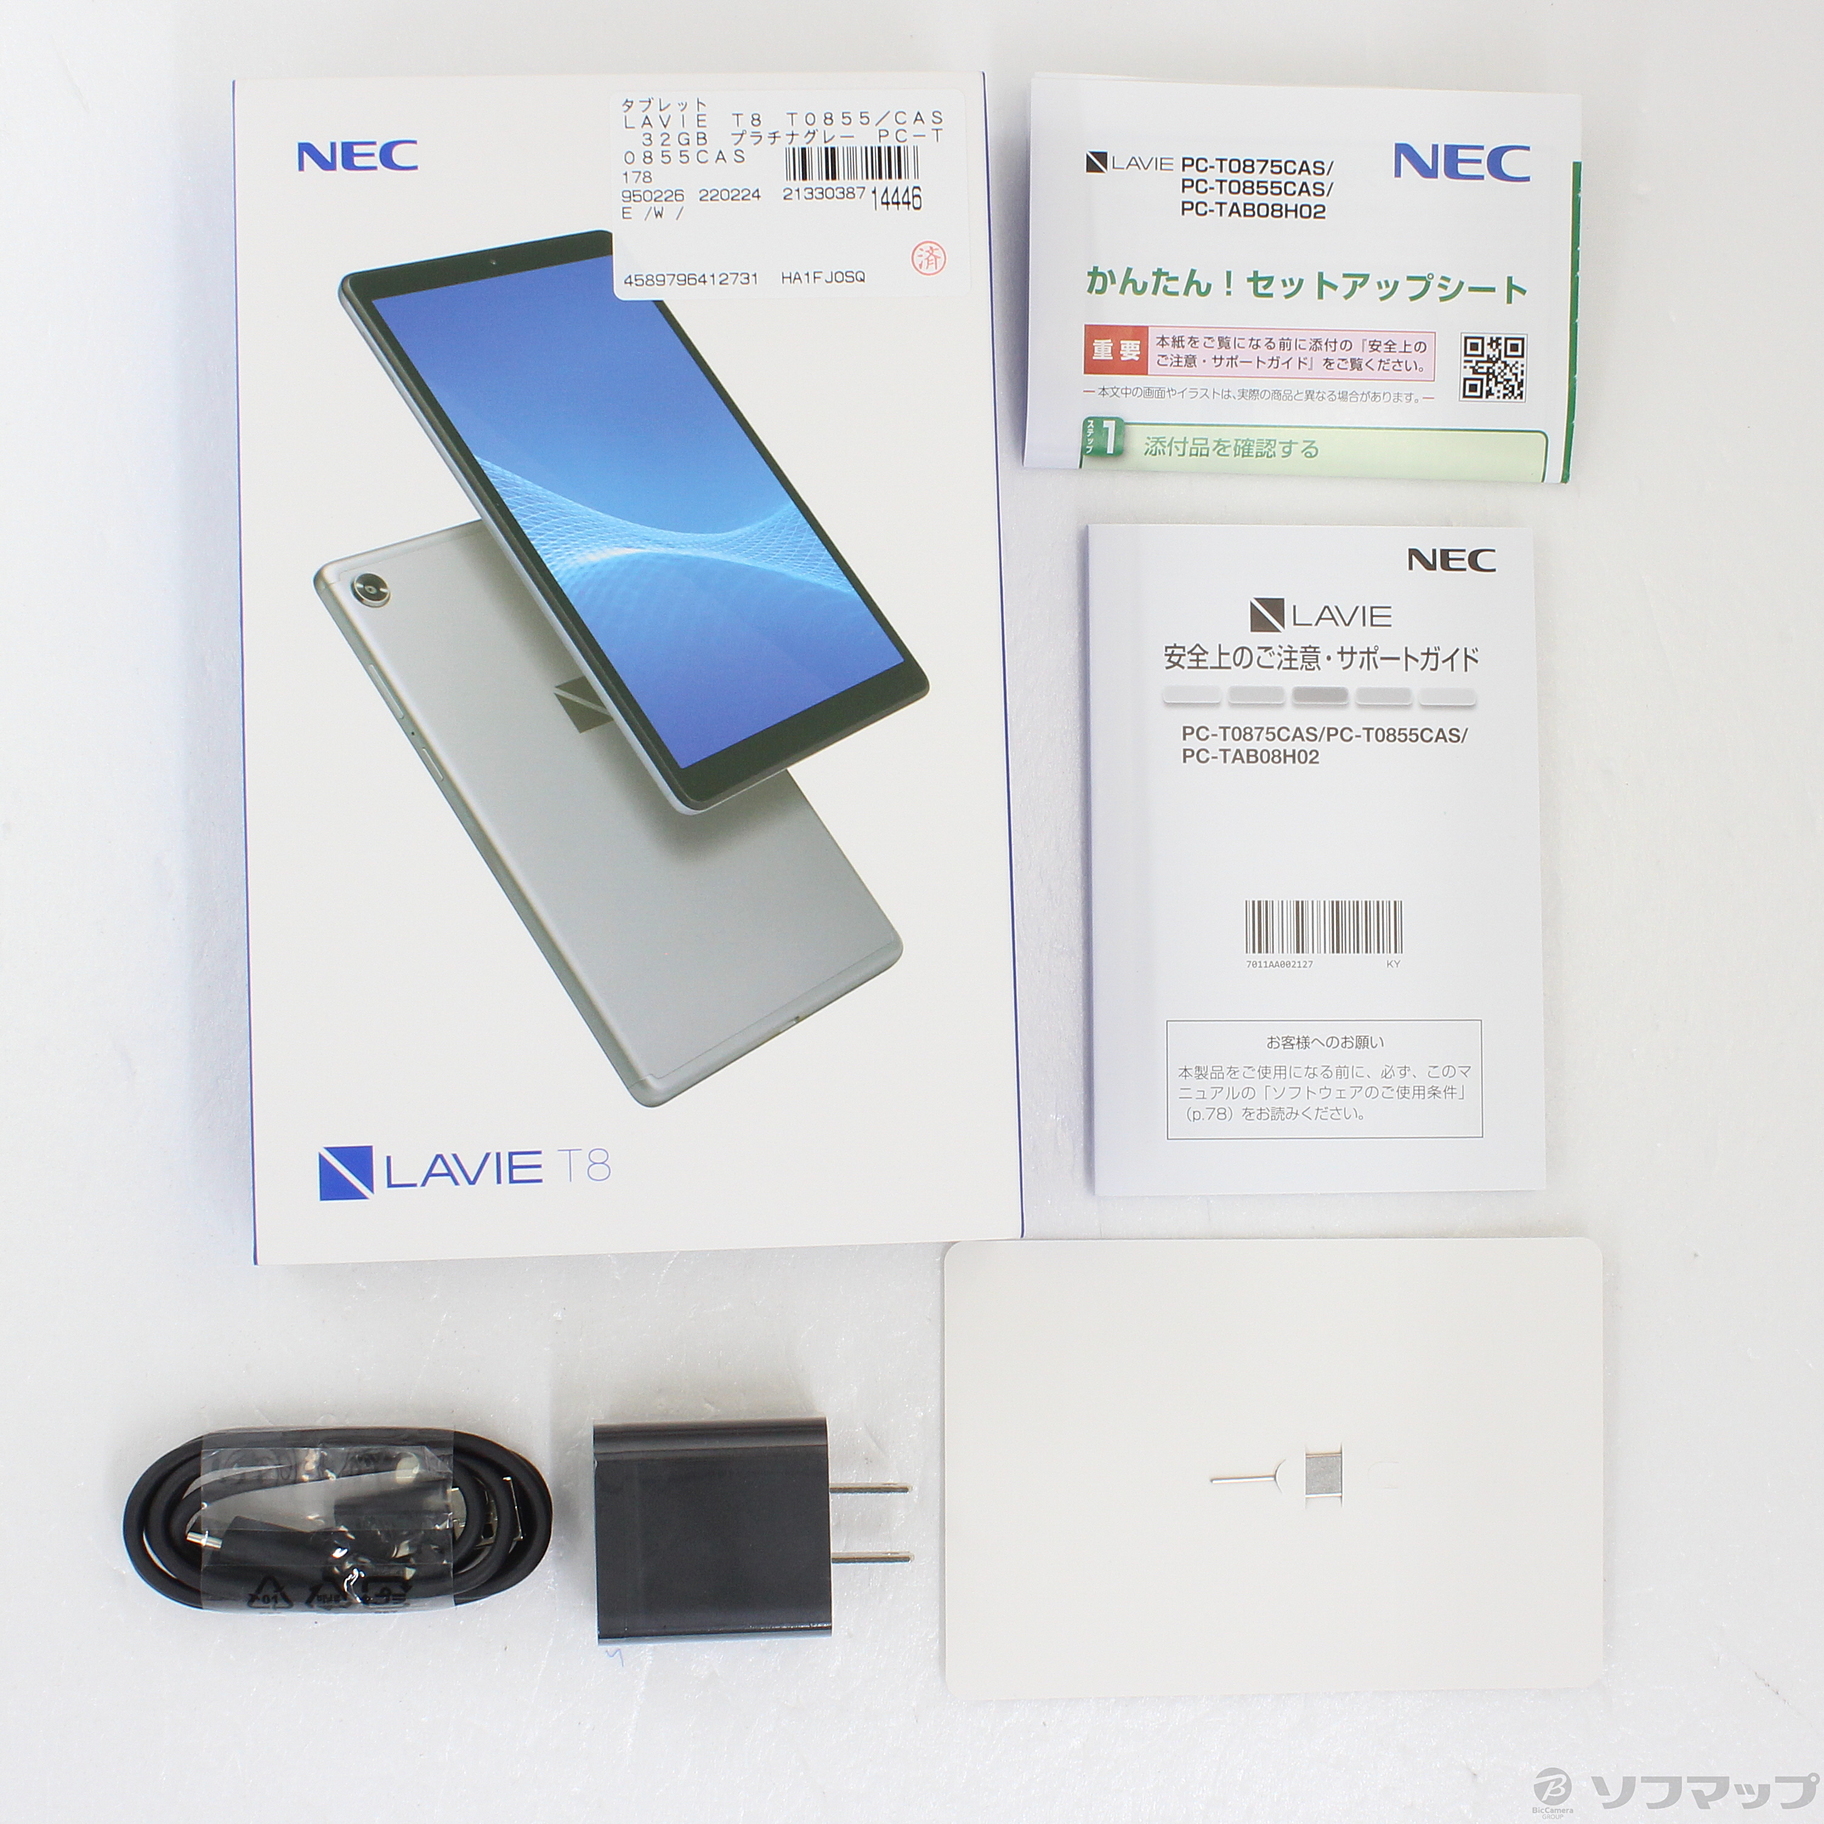 NEC PC-TAB08H02 LAVIE T8